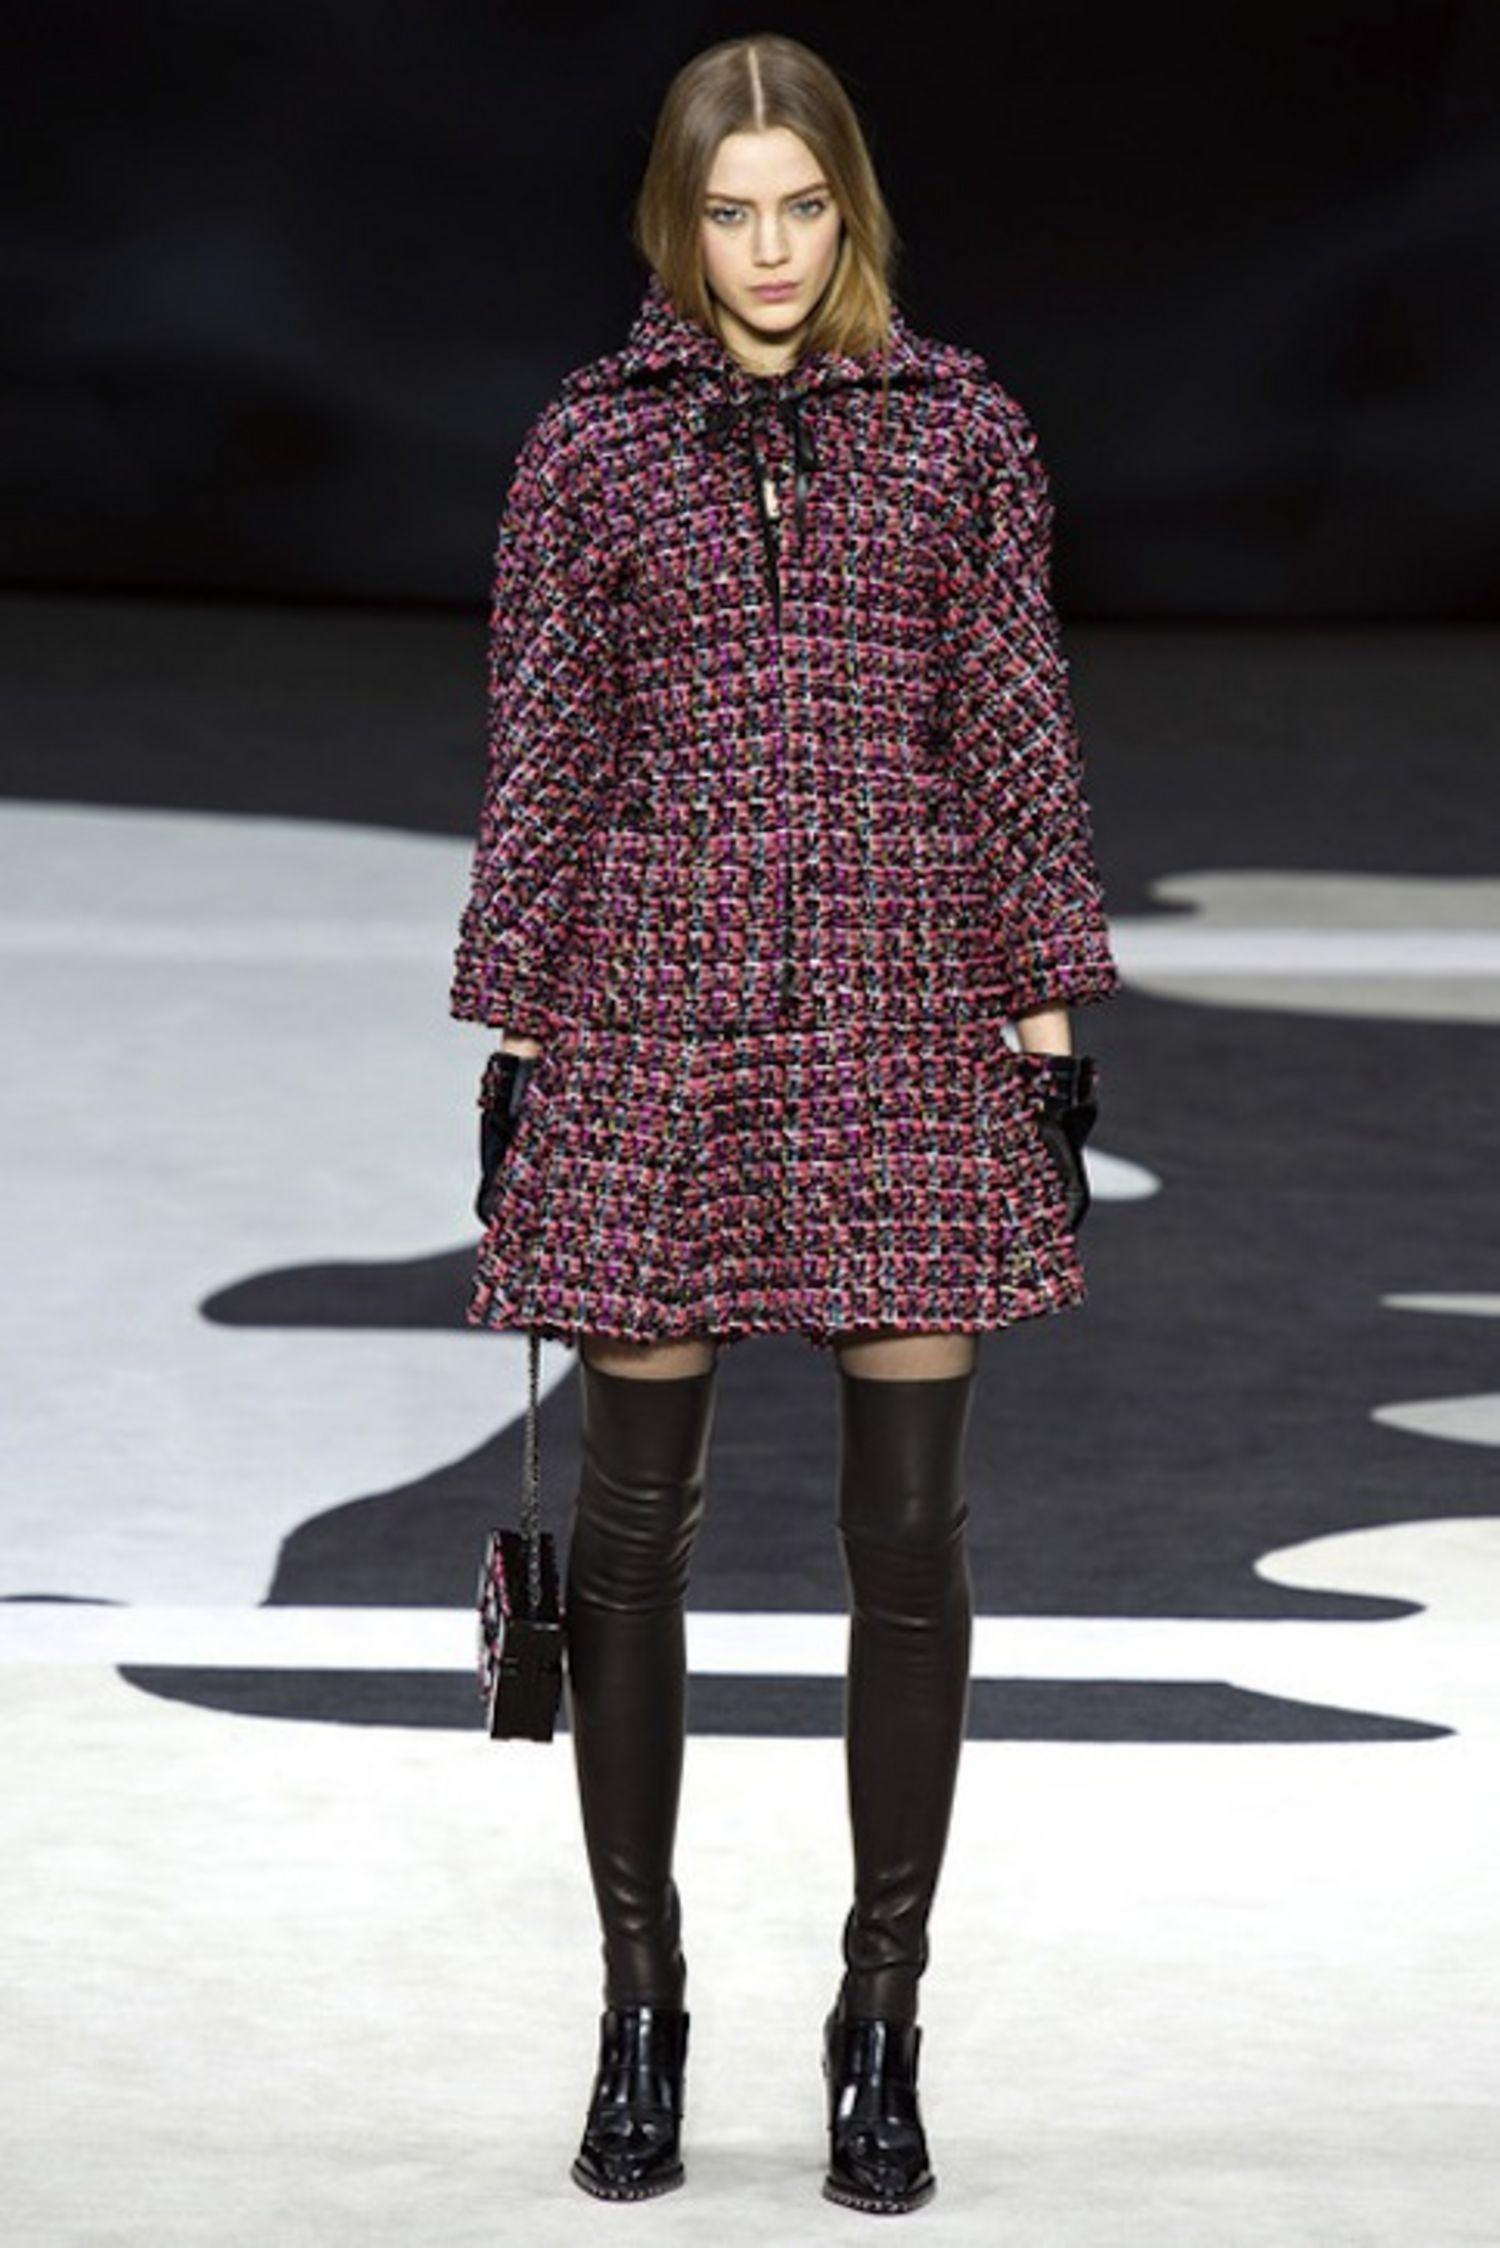 Nouvelle jupe plissée en tweed Lesage rose et noir de Chanel, issue de la Collection GLOBALIZATION, automne 2013 de Karl Lagerfeld.
Prix sur l'étiquette 2,700$ (sans les taxes)
Taille 36 FR. Nouveau avec étiquette